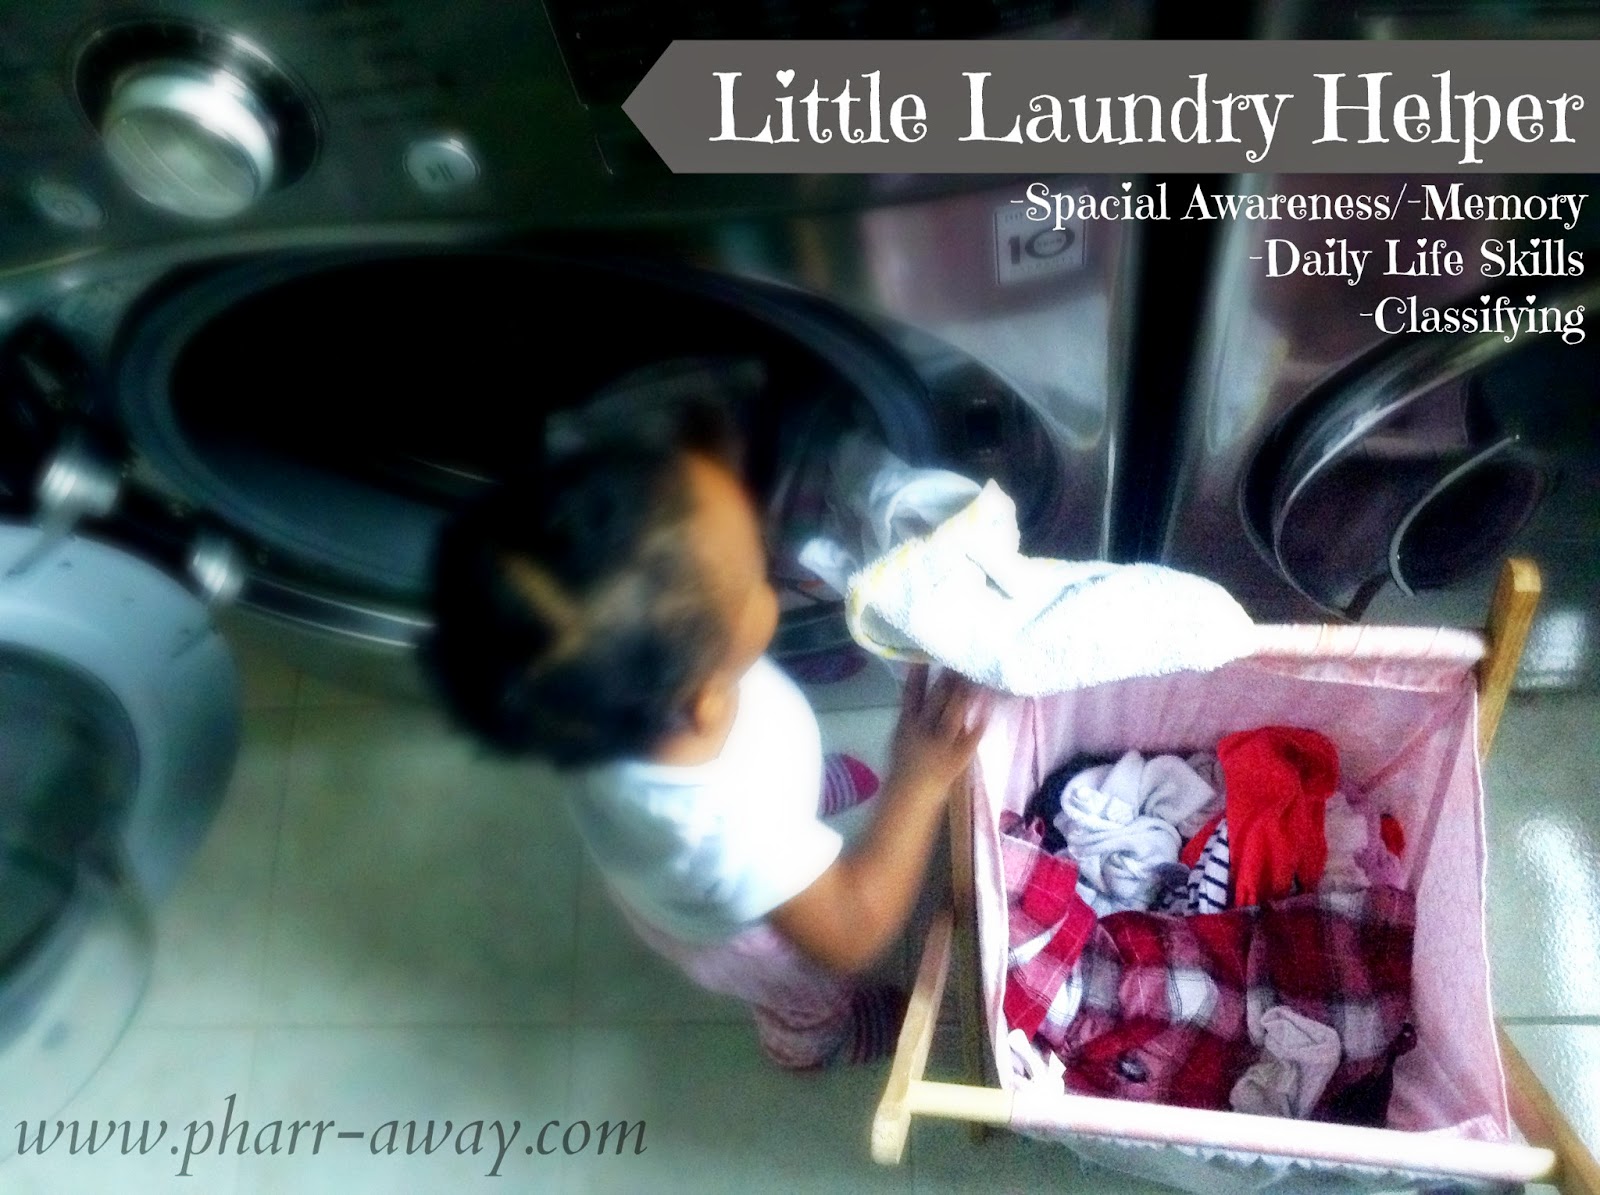 Little Laundry Helper